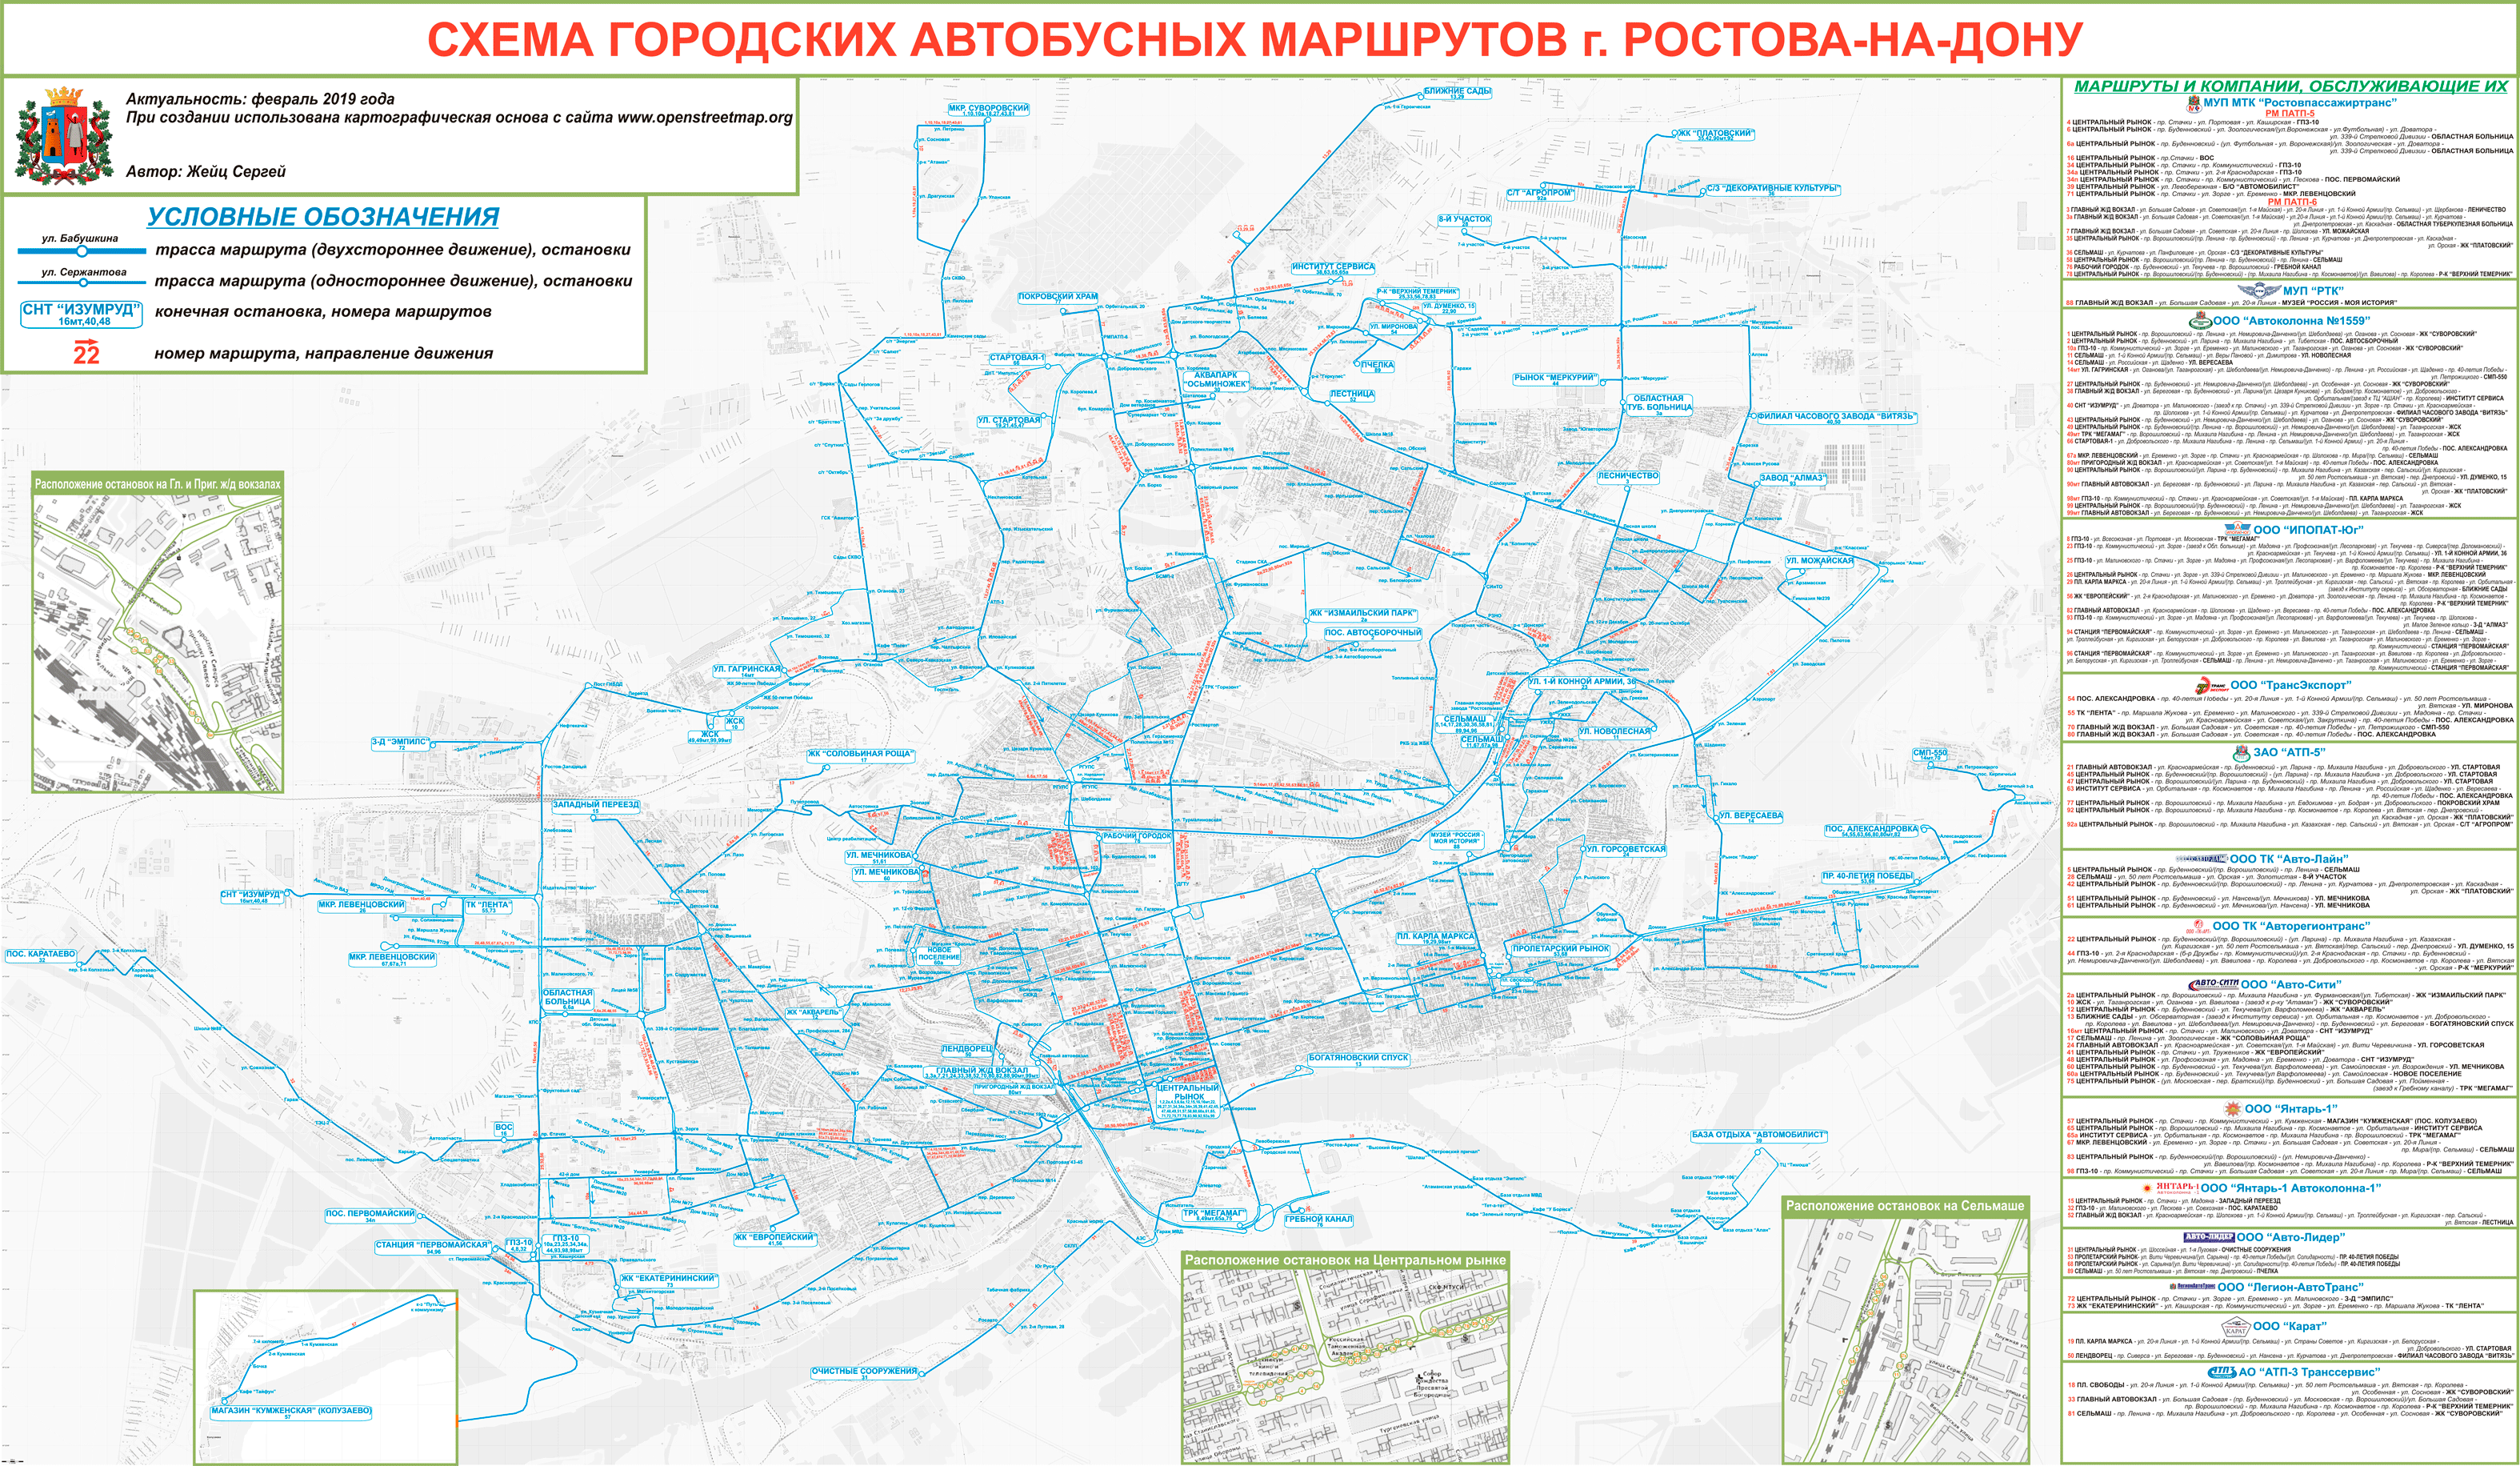 Rostov region — Maps